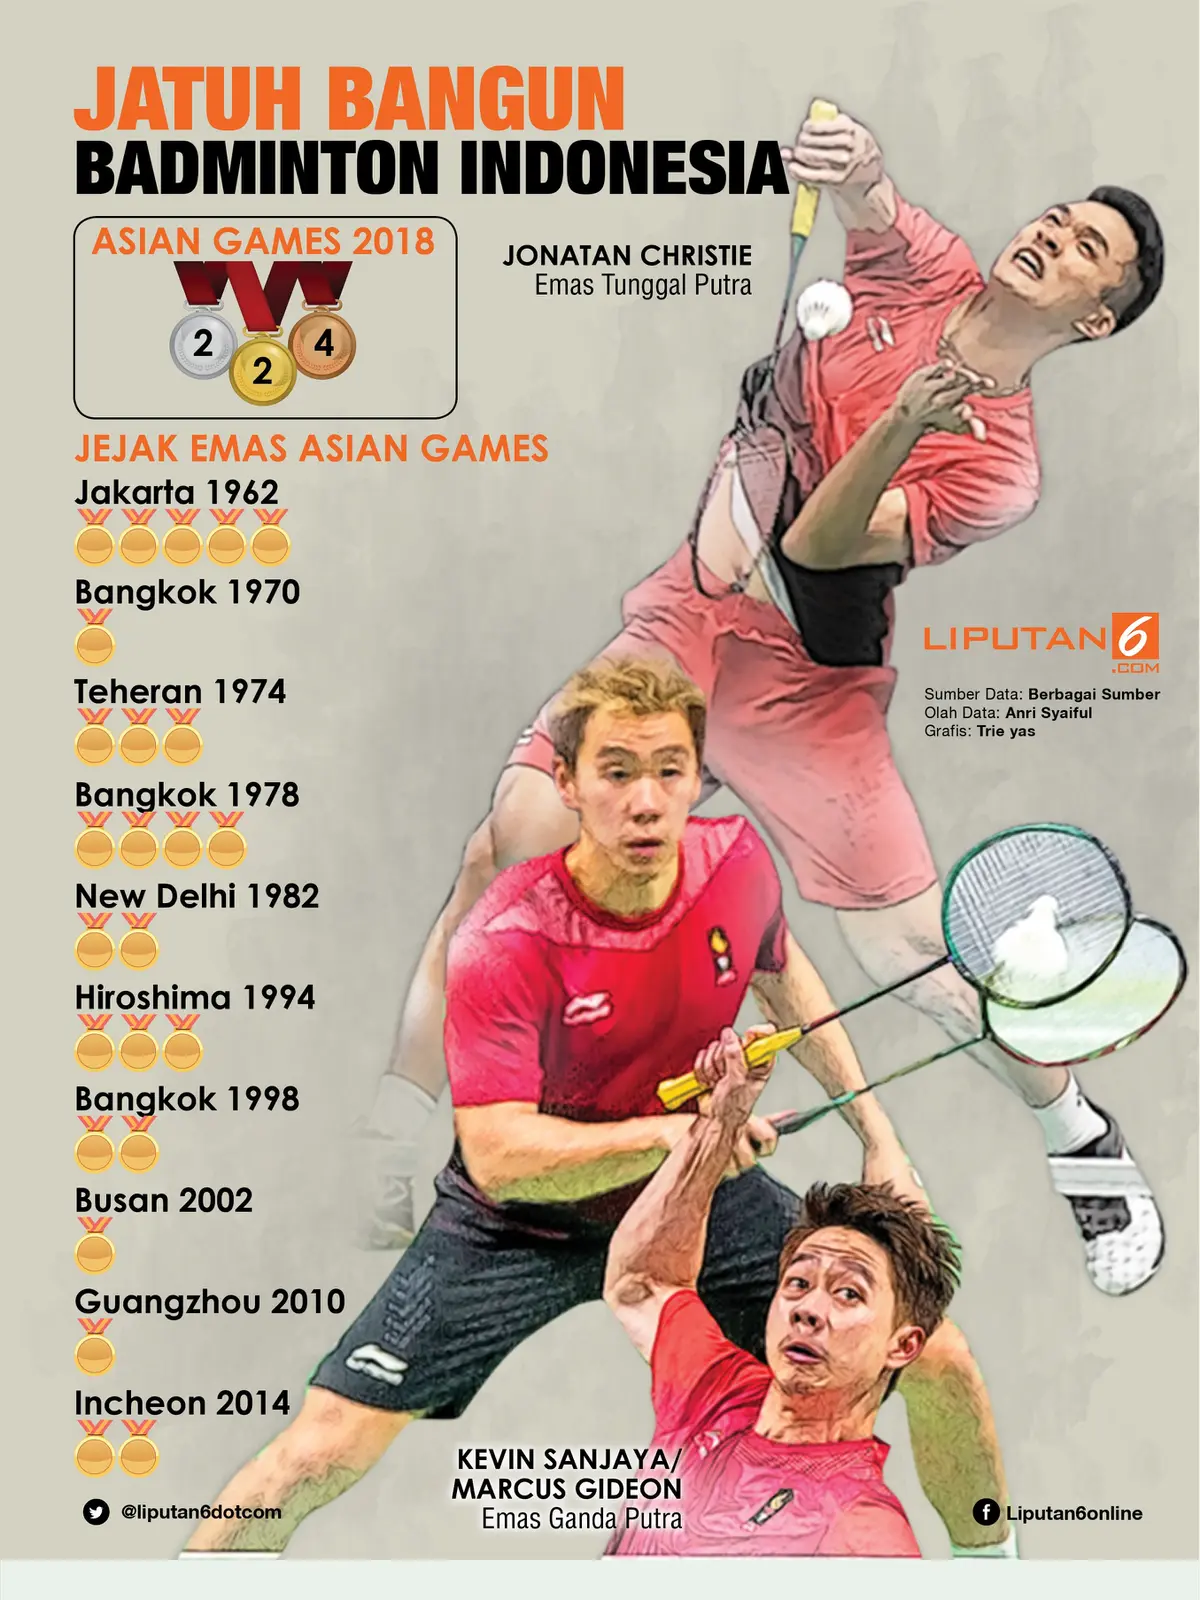 Jatuh Bangun Badminton Indonesia di Asian Games